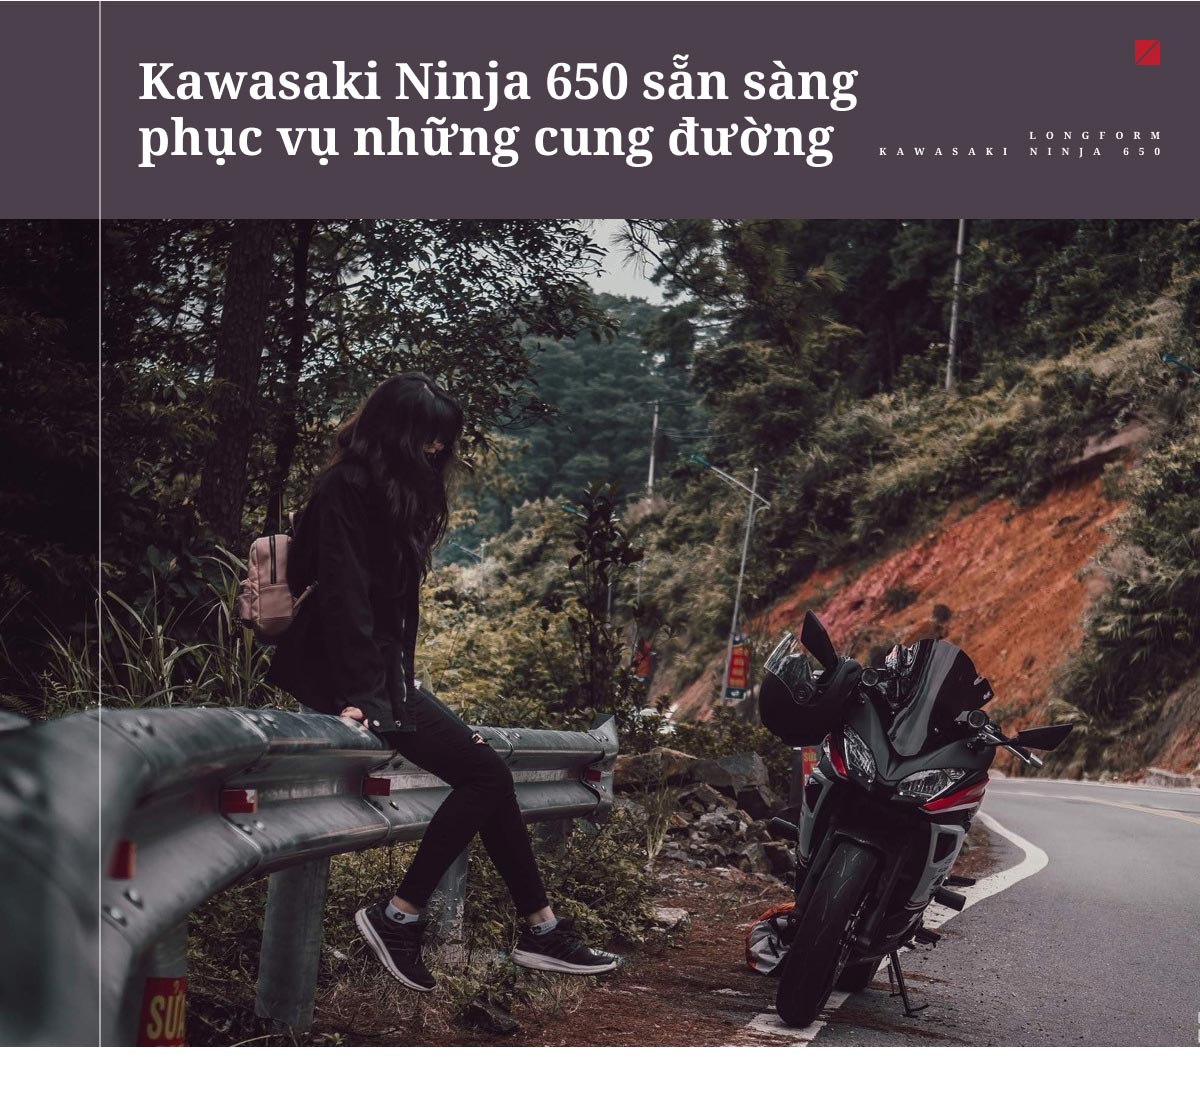 Kawasaki Ninja 650 là chiếc xe phù hợp với những cung đường dài